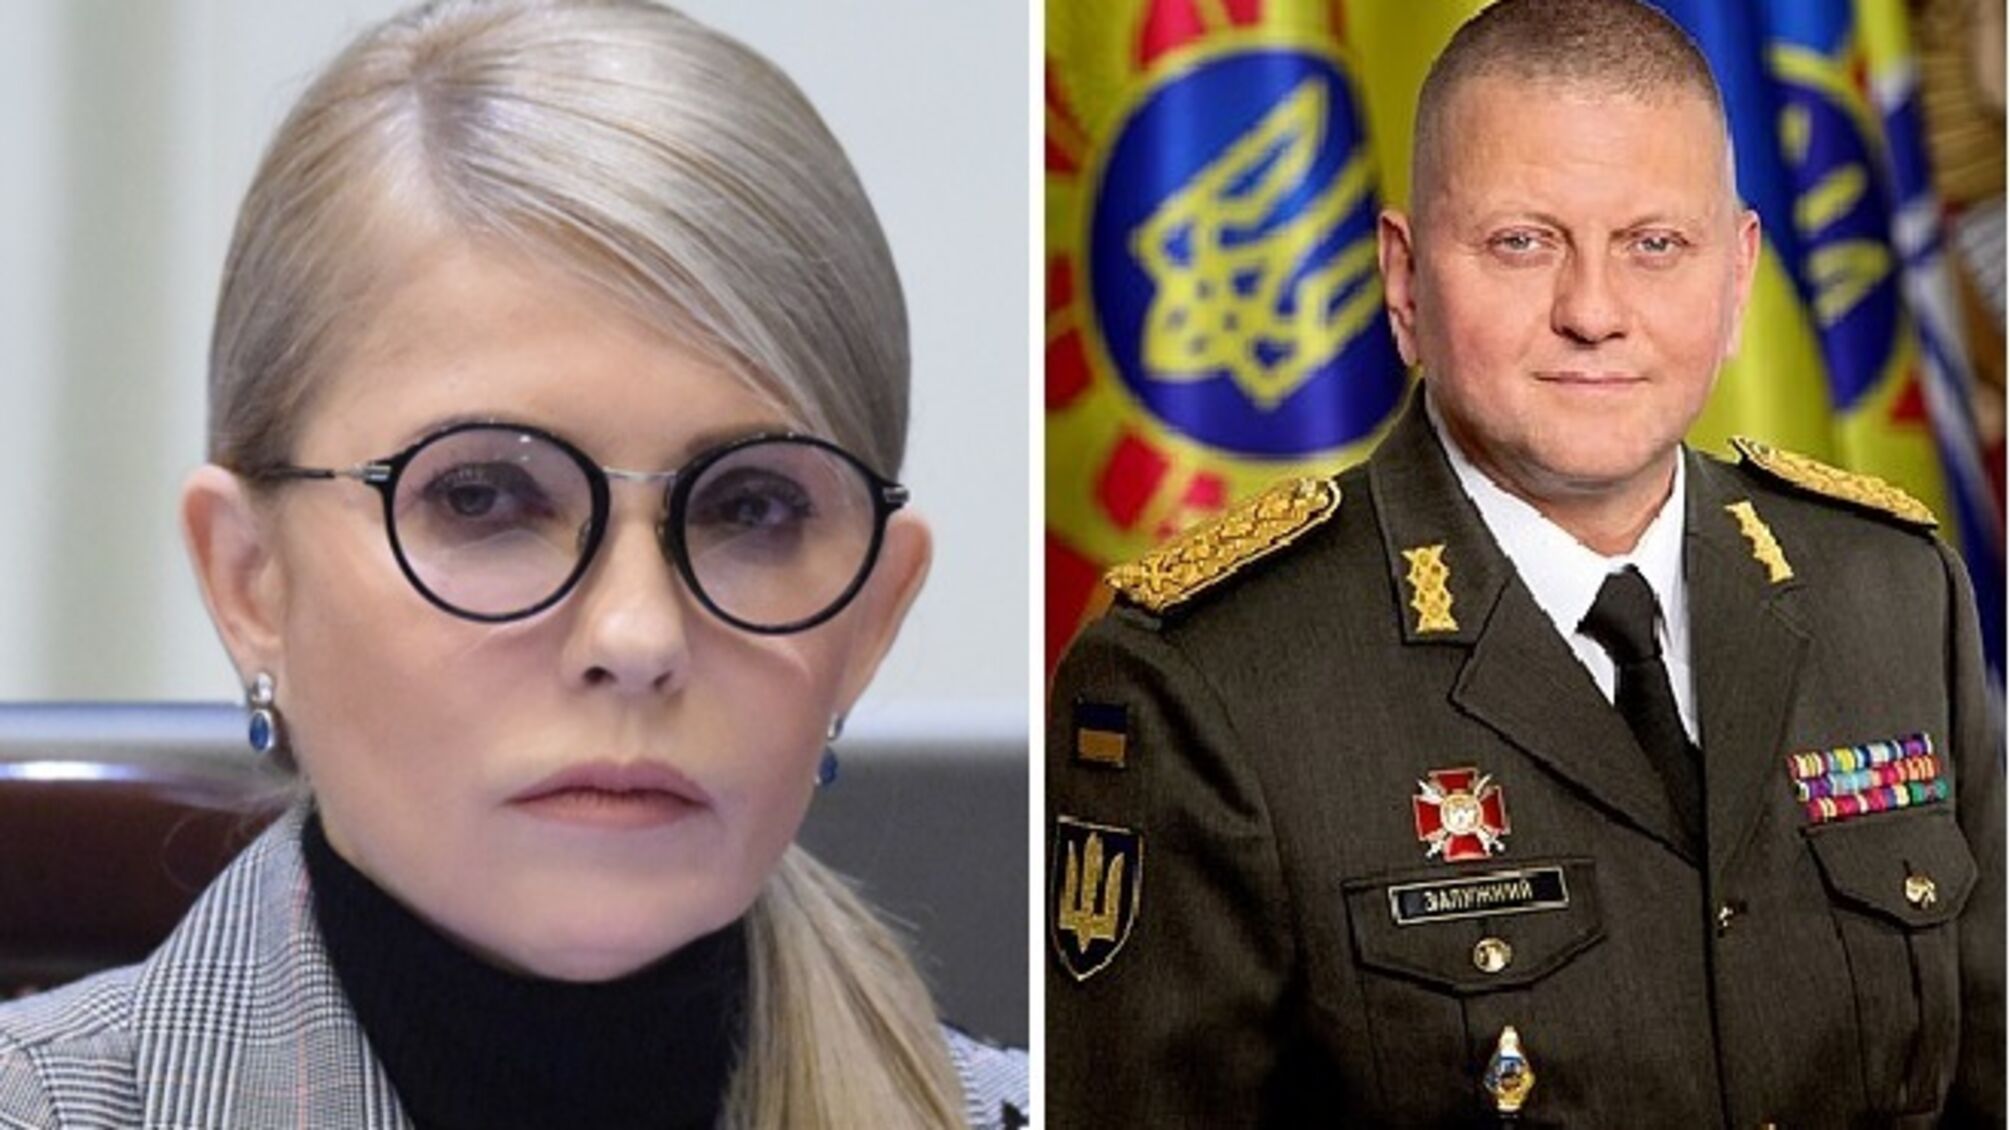 Тимошенко виступила категорично проти відставки Залужного: голова 'Батьківщини' записала відеозвернення